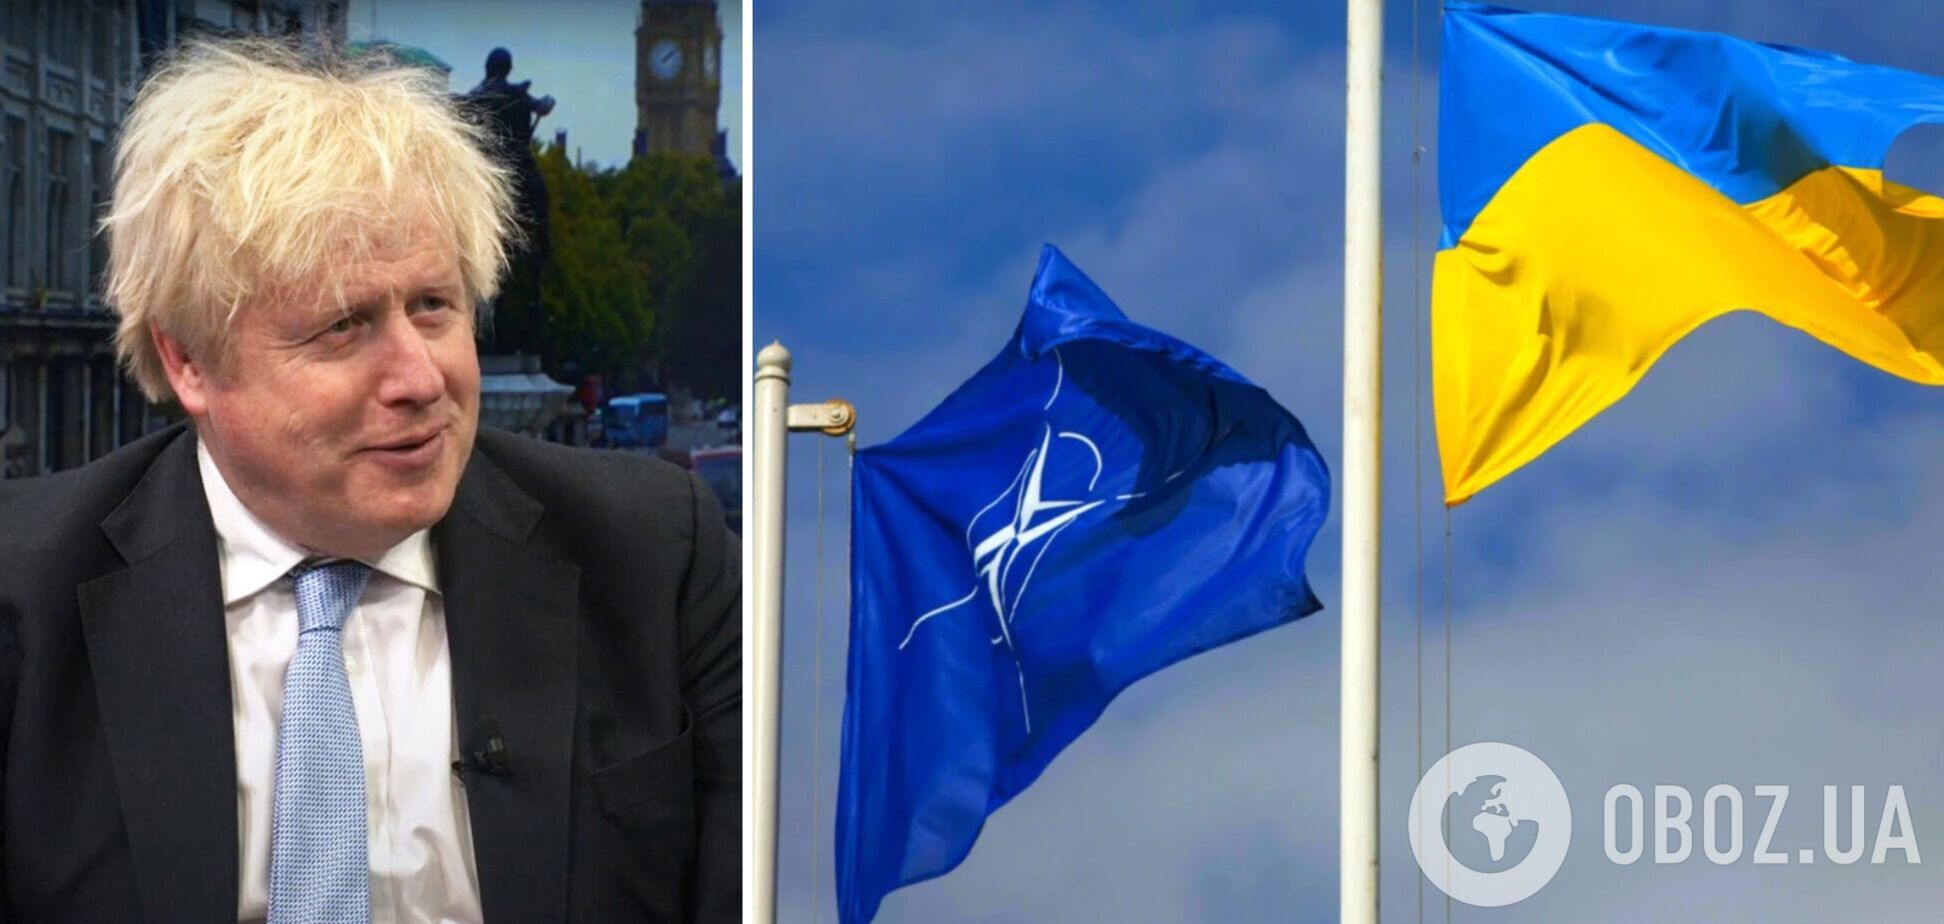 Россия потеряла право протестовать против членства Украины в НАТО, – Джонсон на Kyiv Jewish Forum